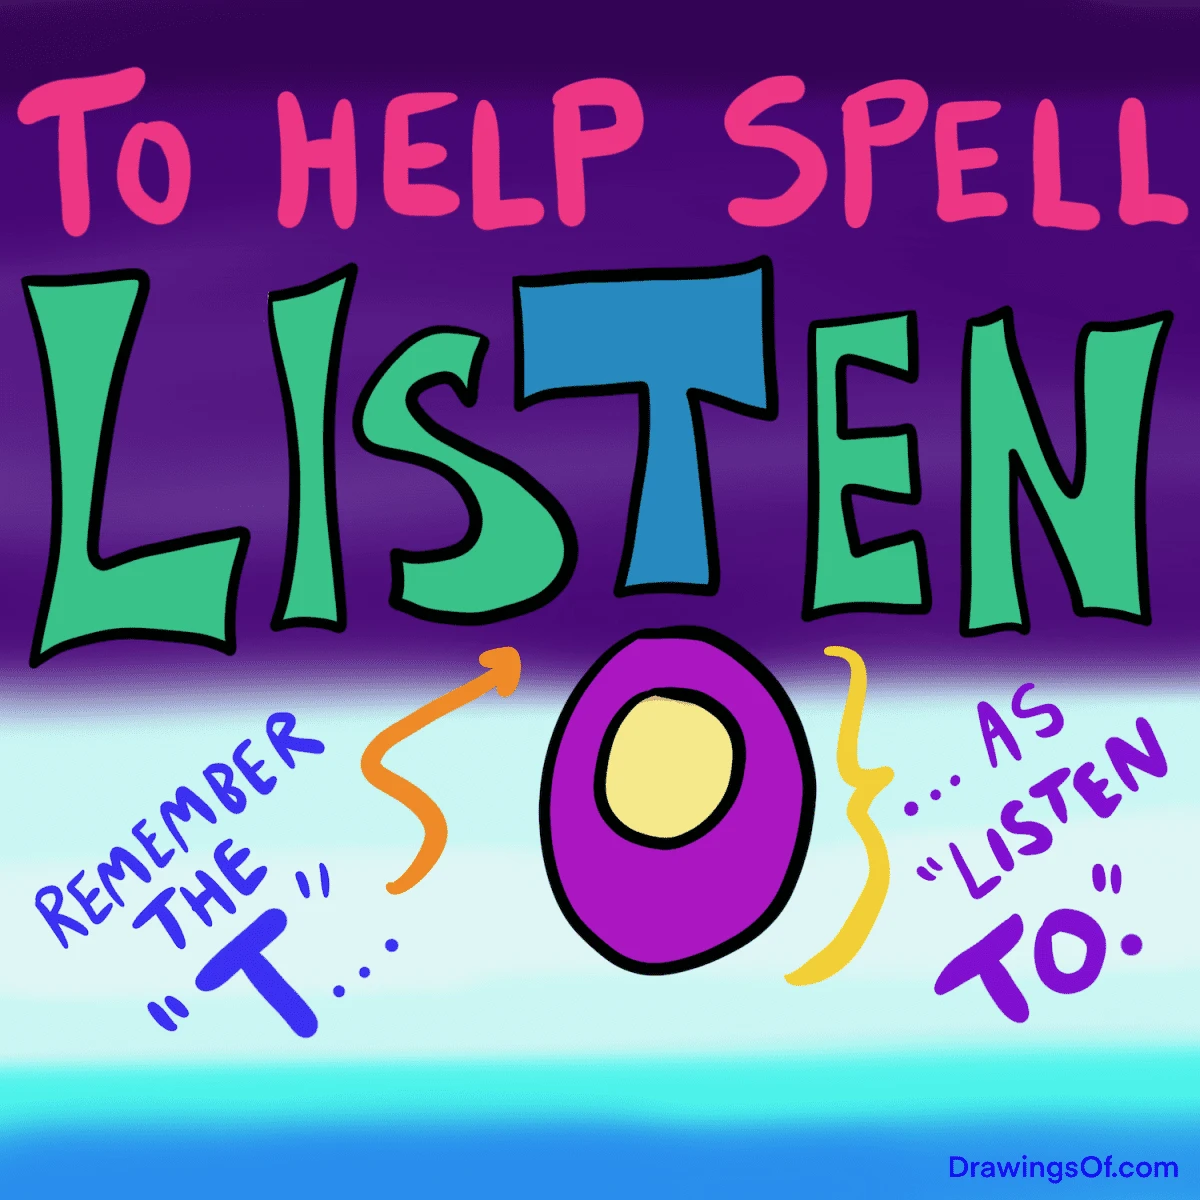 How do you spell listen